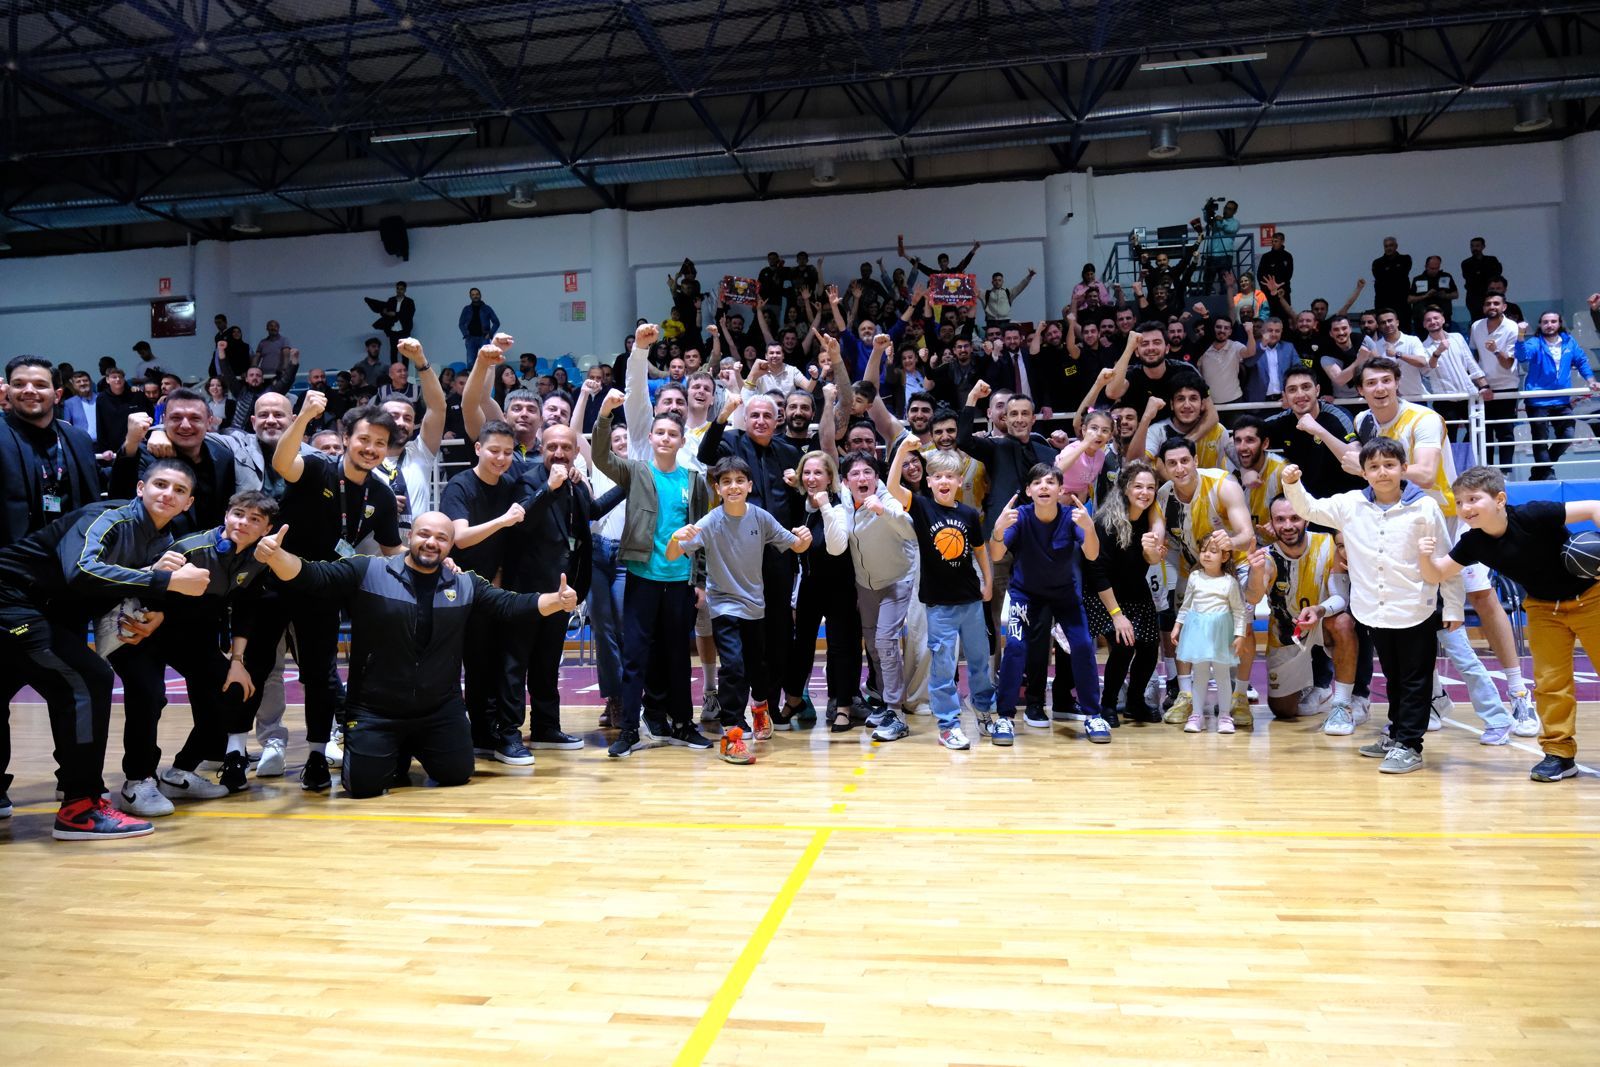 Büyükşehir Belediyespor Basketbolda Yarı Finalde